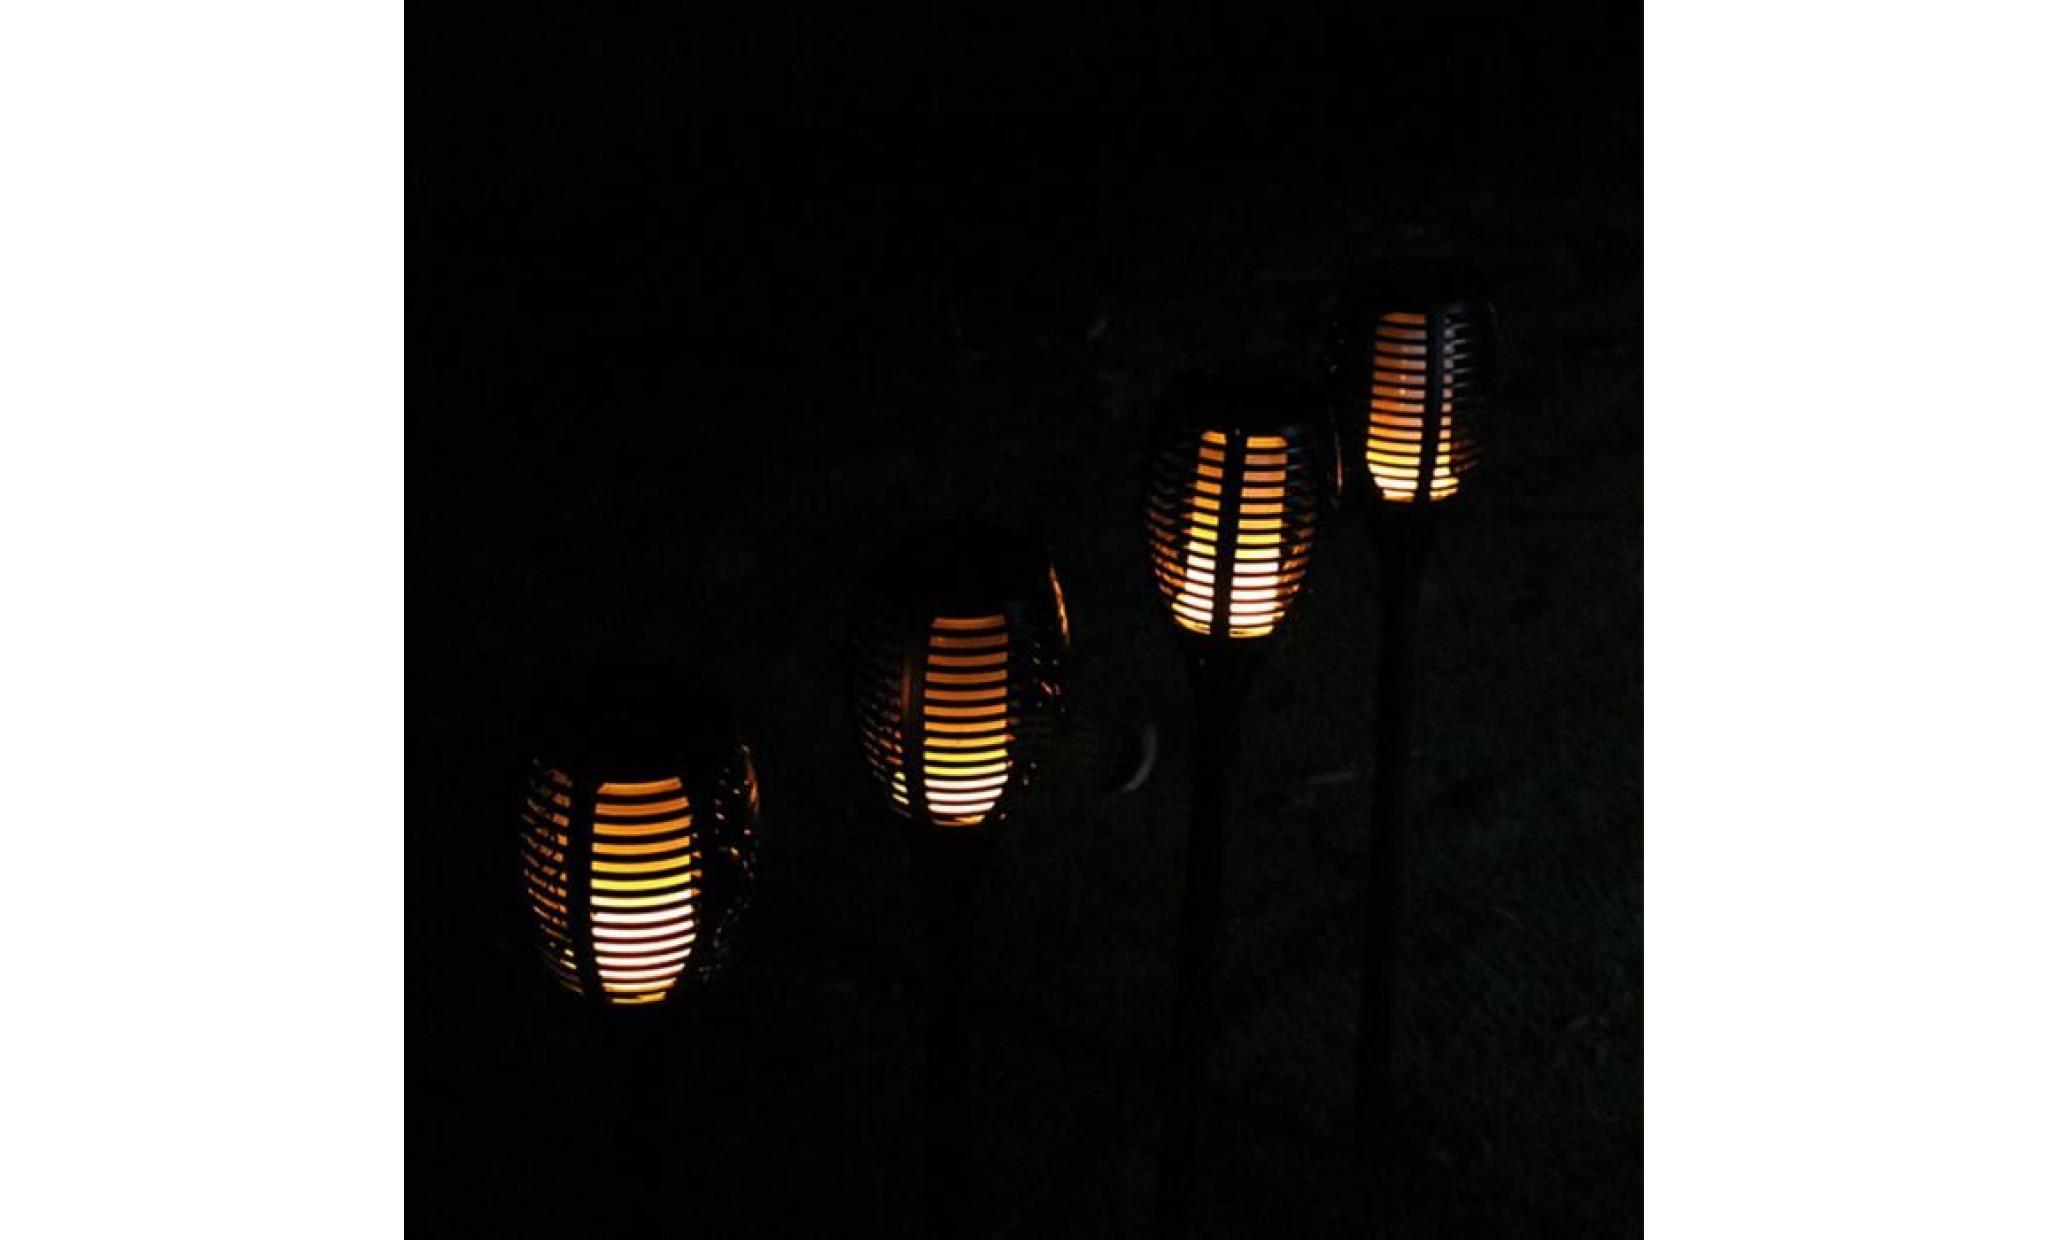 borne solaire 1 pcs solaire extérieure imperméable À l'eau lampes de lanterne lamp pathways yard patio #pa 110 pas cher